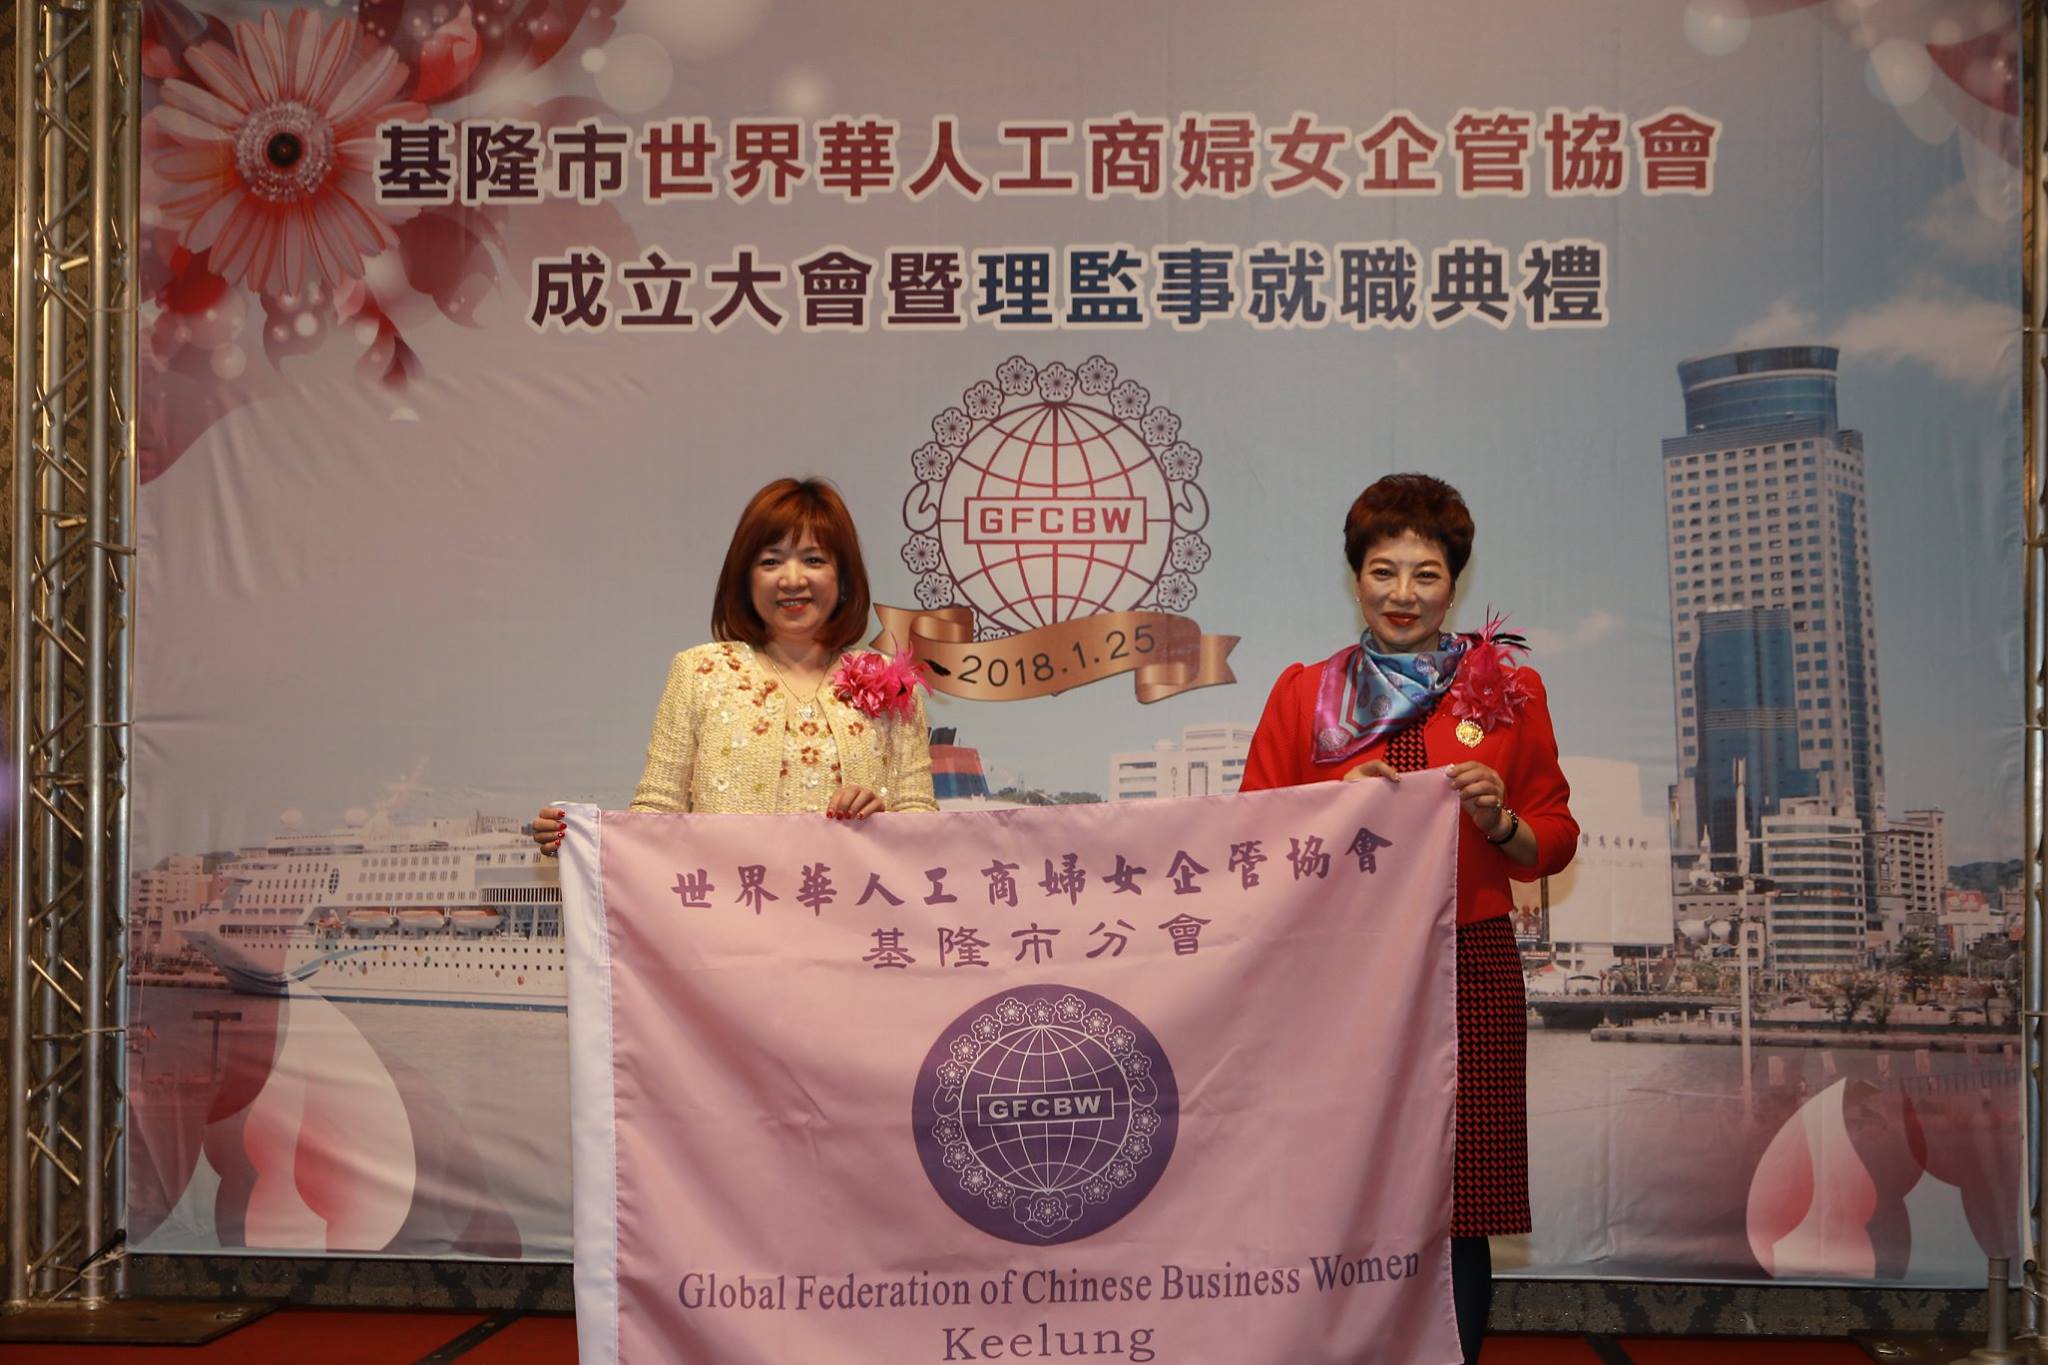 世界華人工商婦女企管協會基隆市分會成立大會